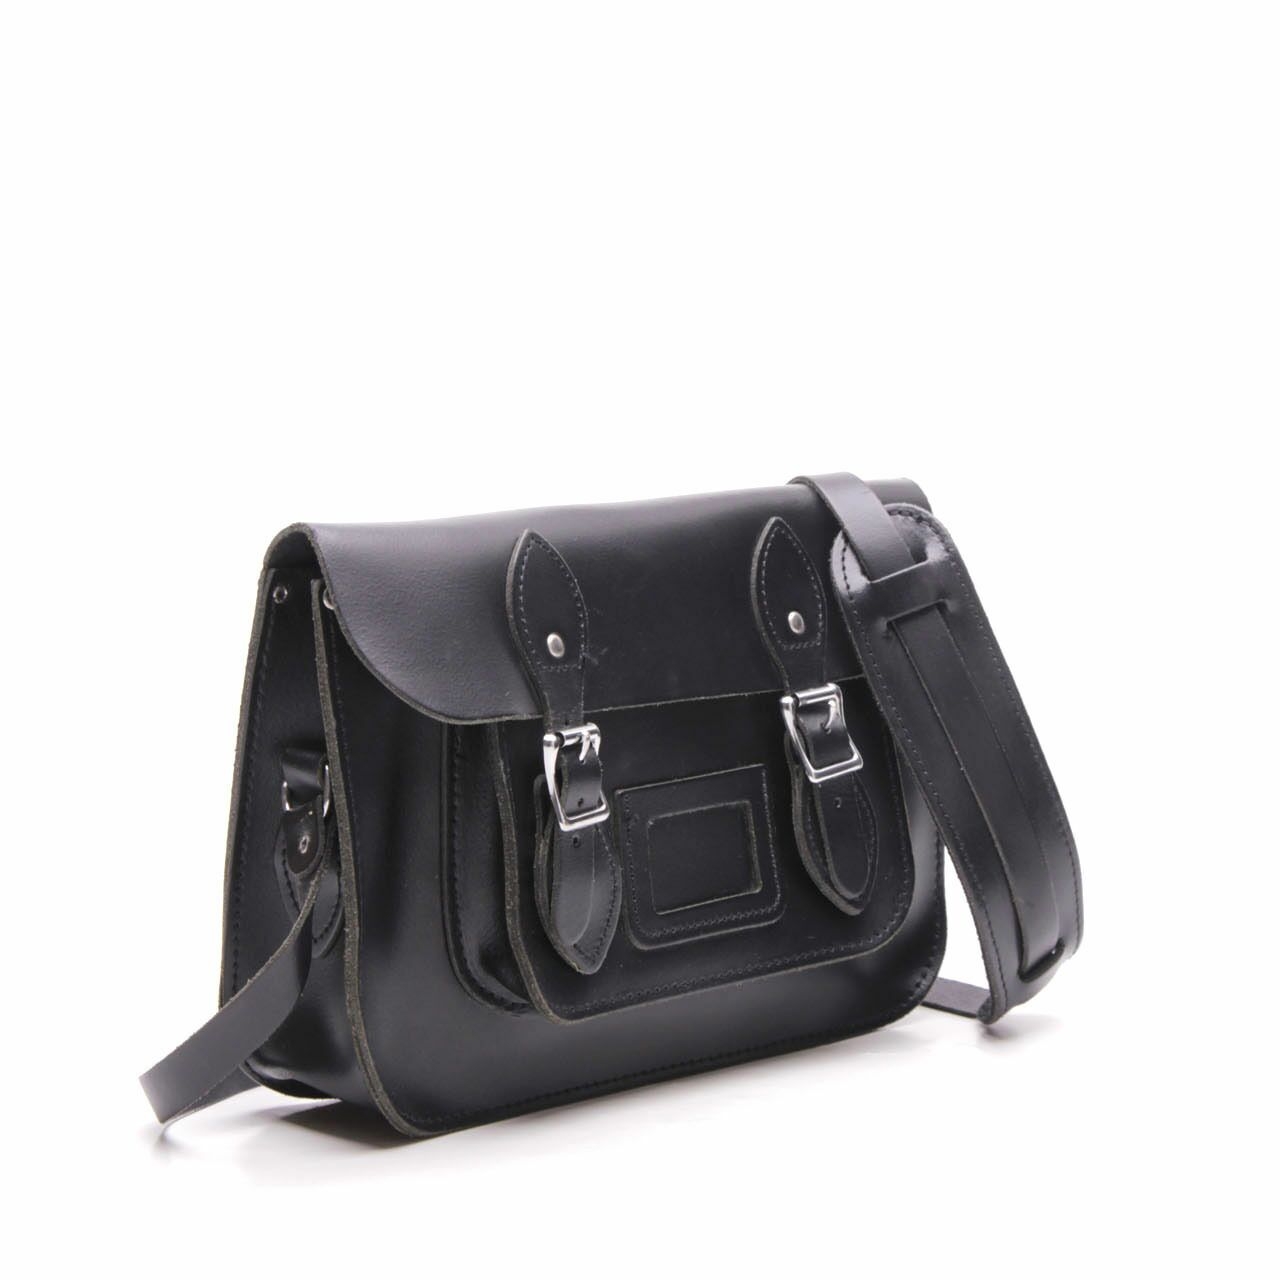 The Leather Satchel Co Black Sling bag